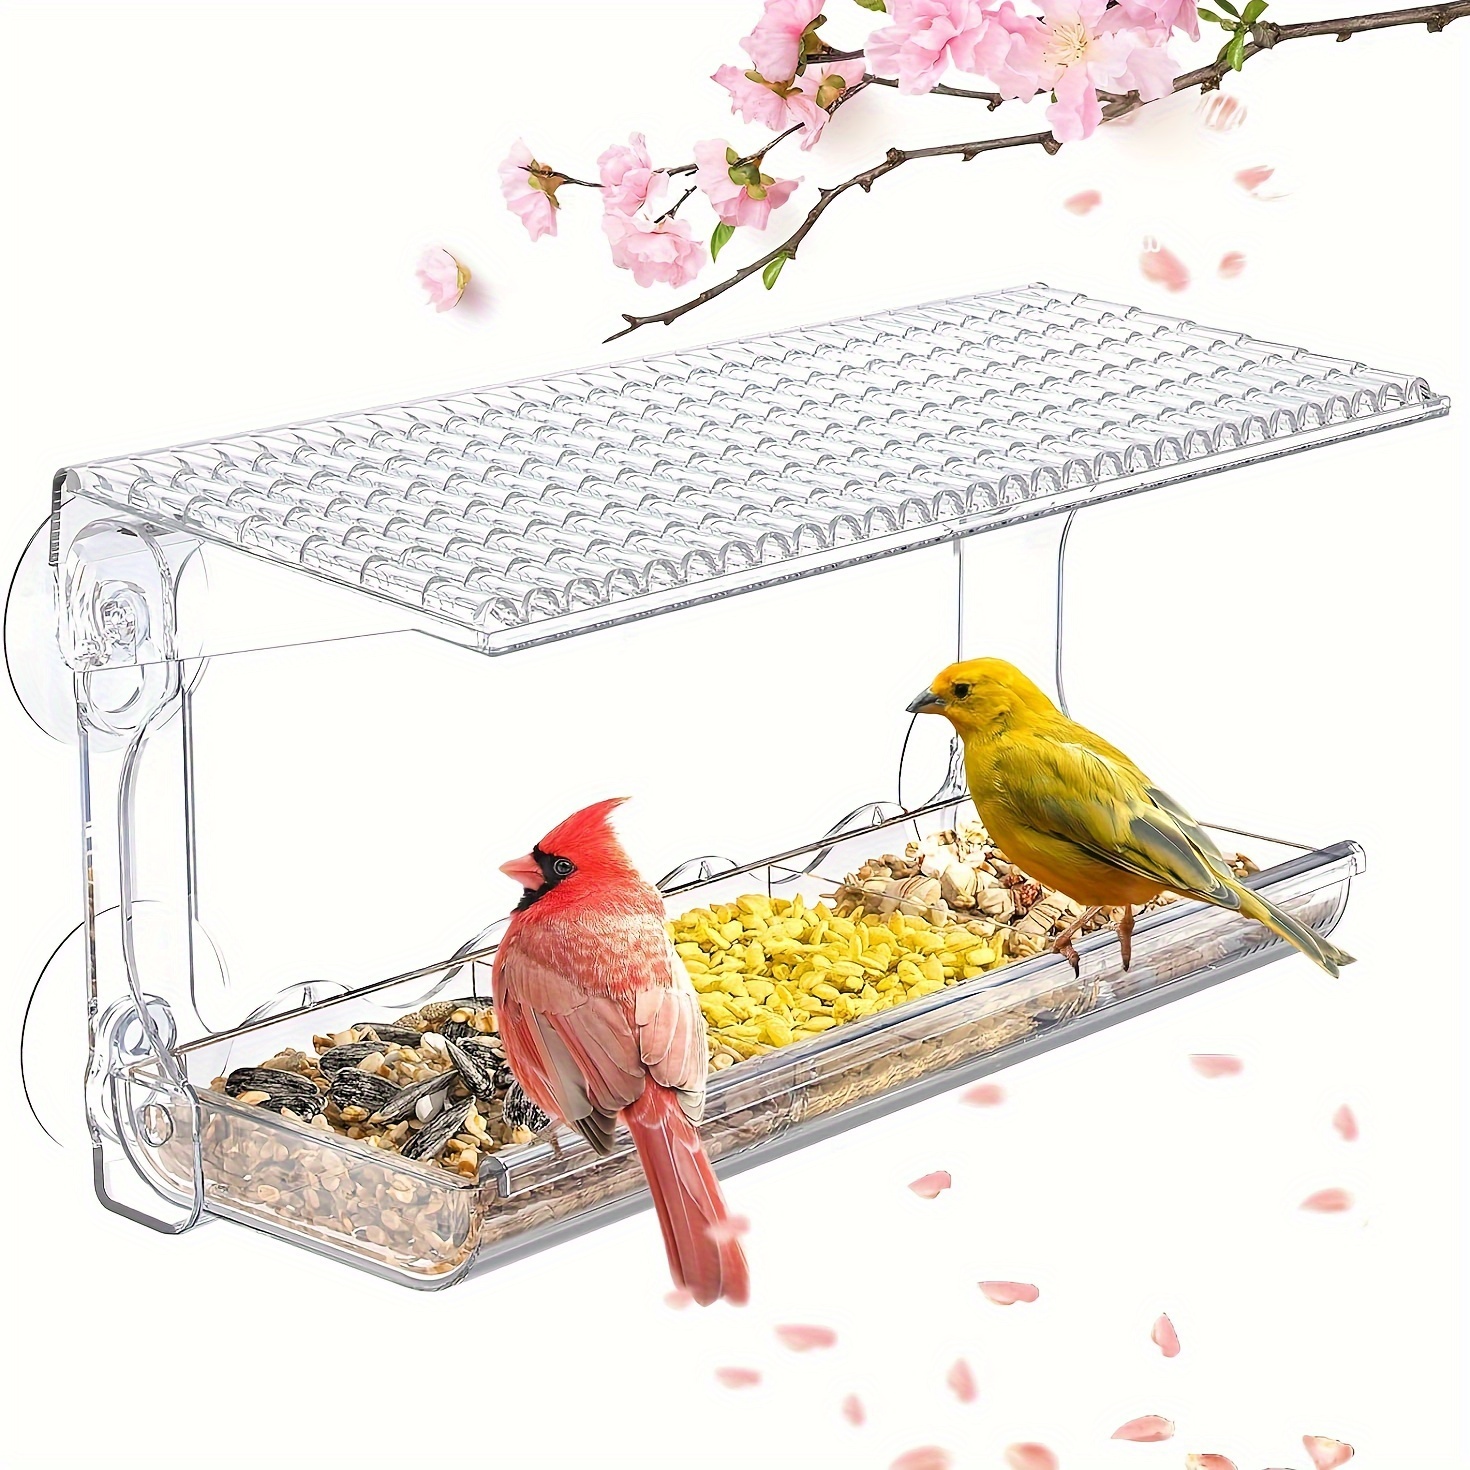 

Mangeoire à oiseaux en acrylique avec ventouses puissantes, mangeoire transparente pour oiseaux sauvages, station d'alimentation résistante aux intempéries - Capacité de 480 ml de graines